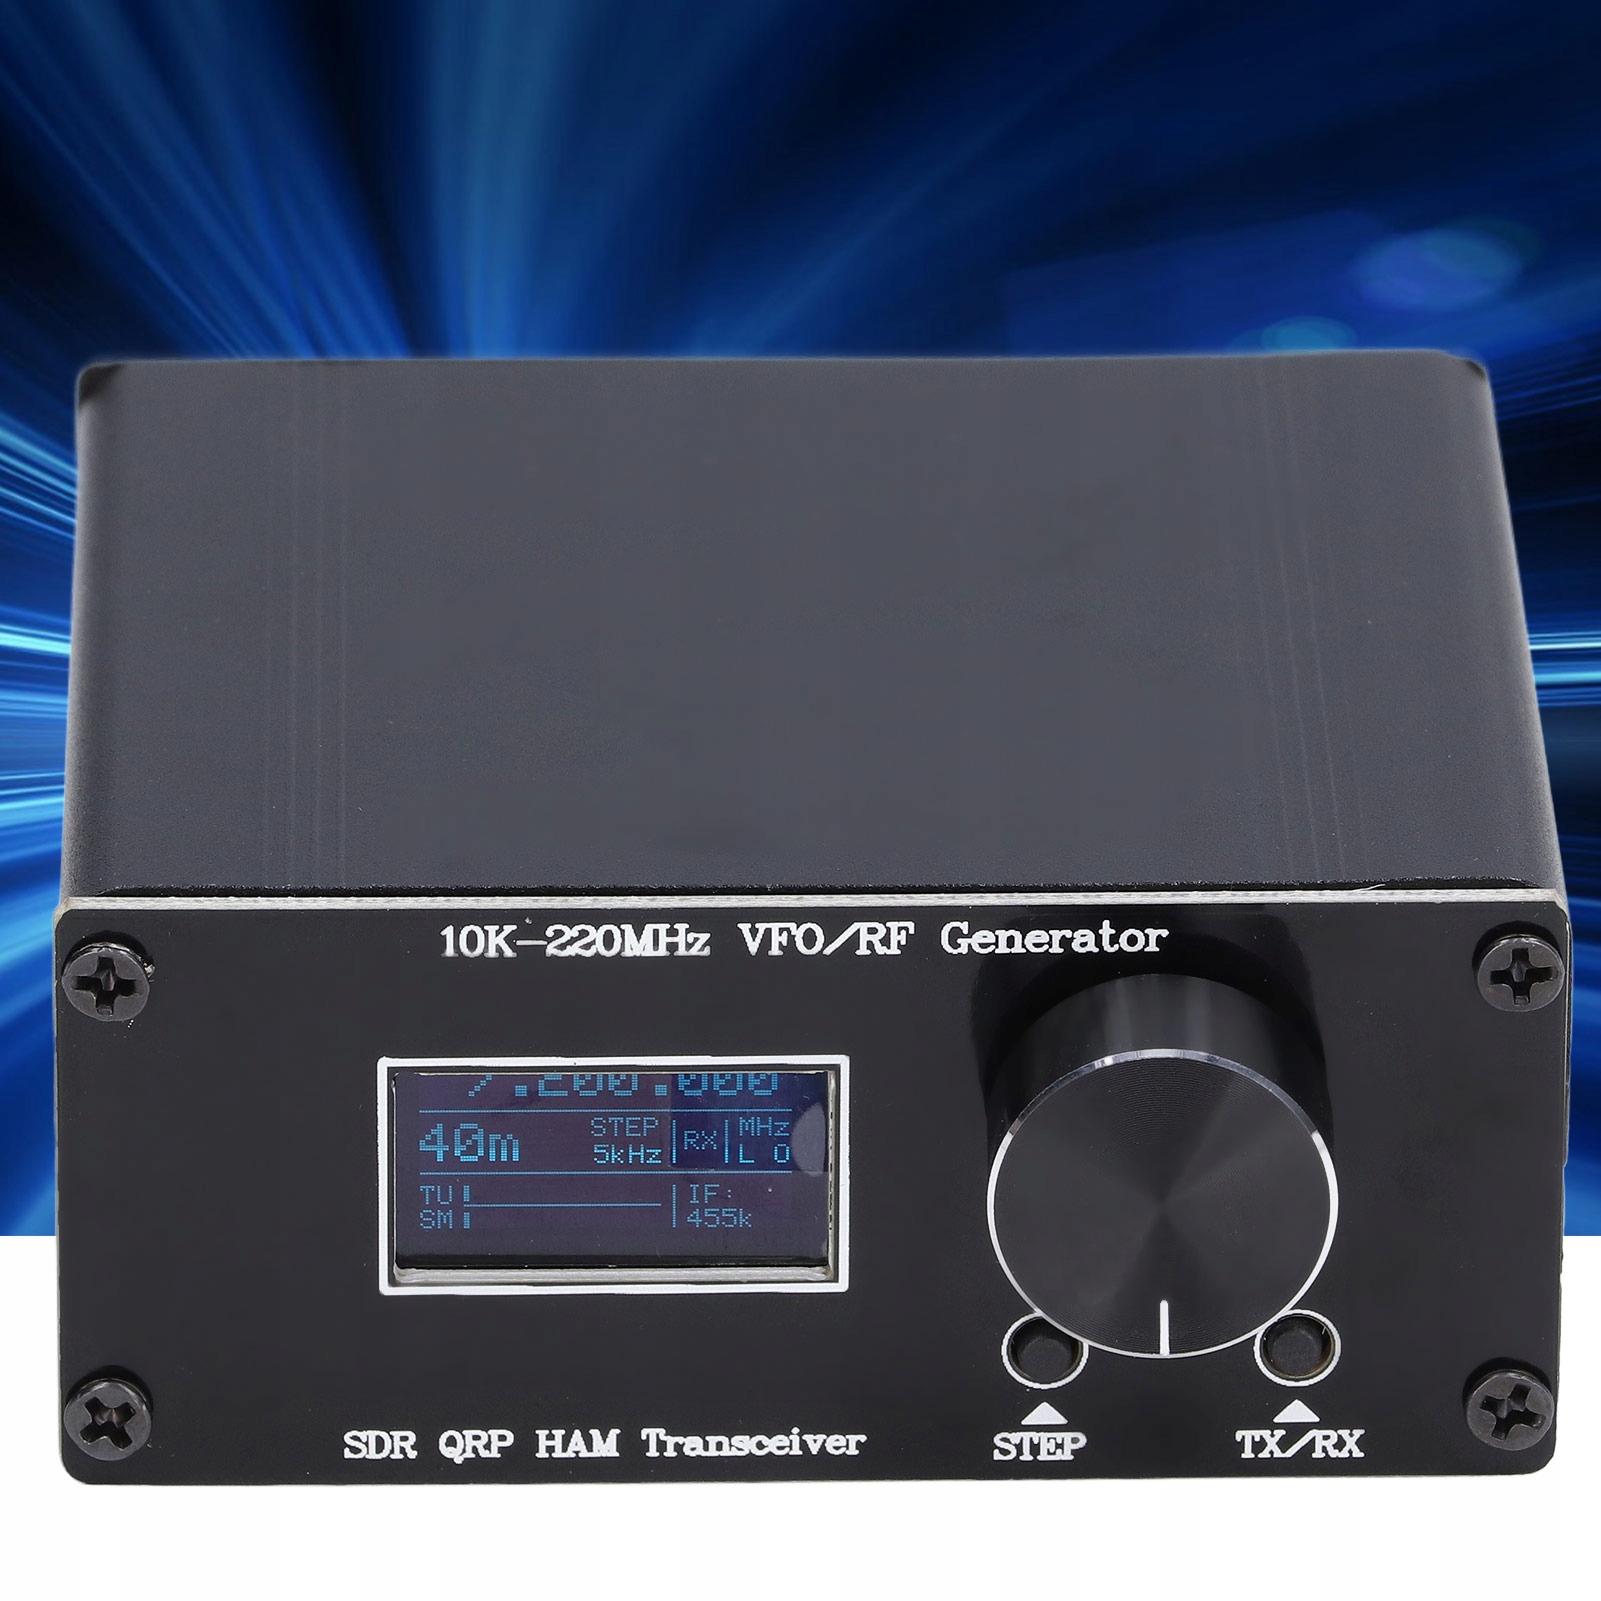 SDR TRANSCEIVER HF QRP DO VFO RF генератор код производителя 1013210383811